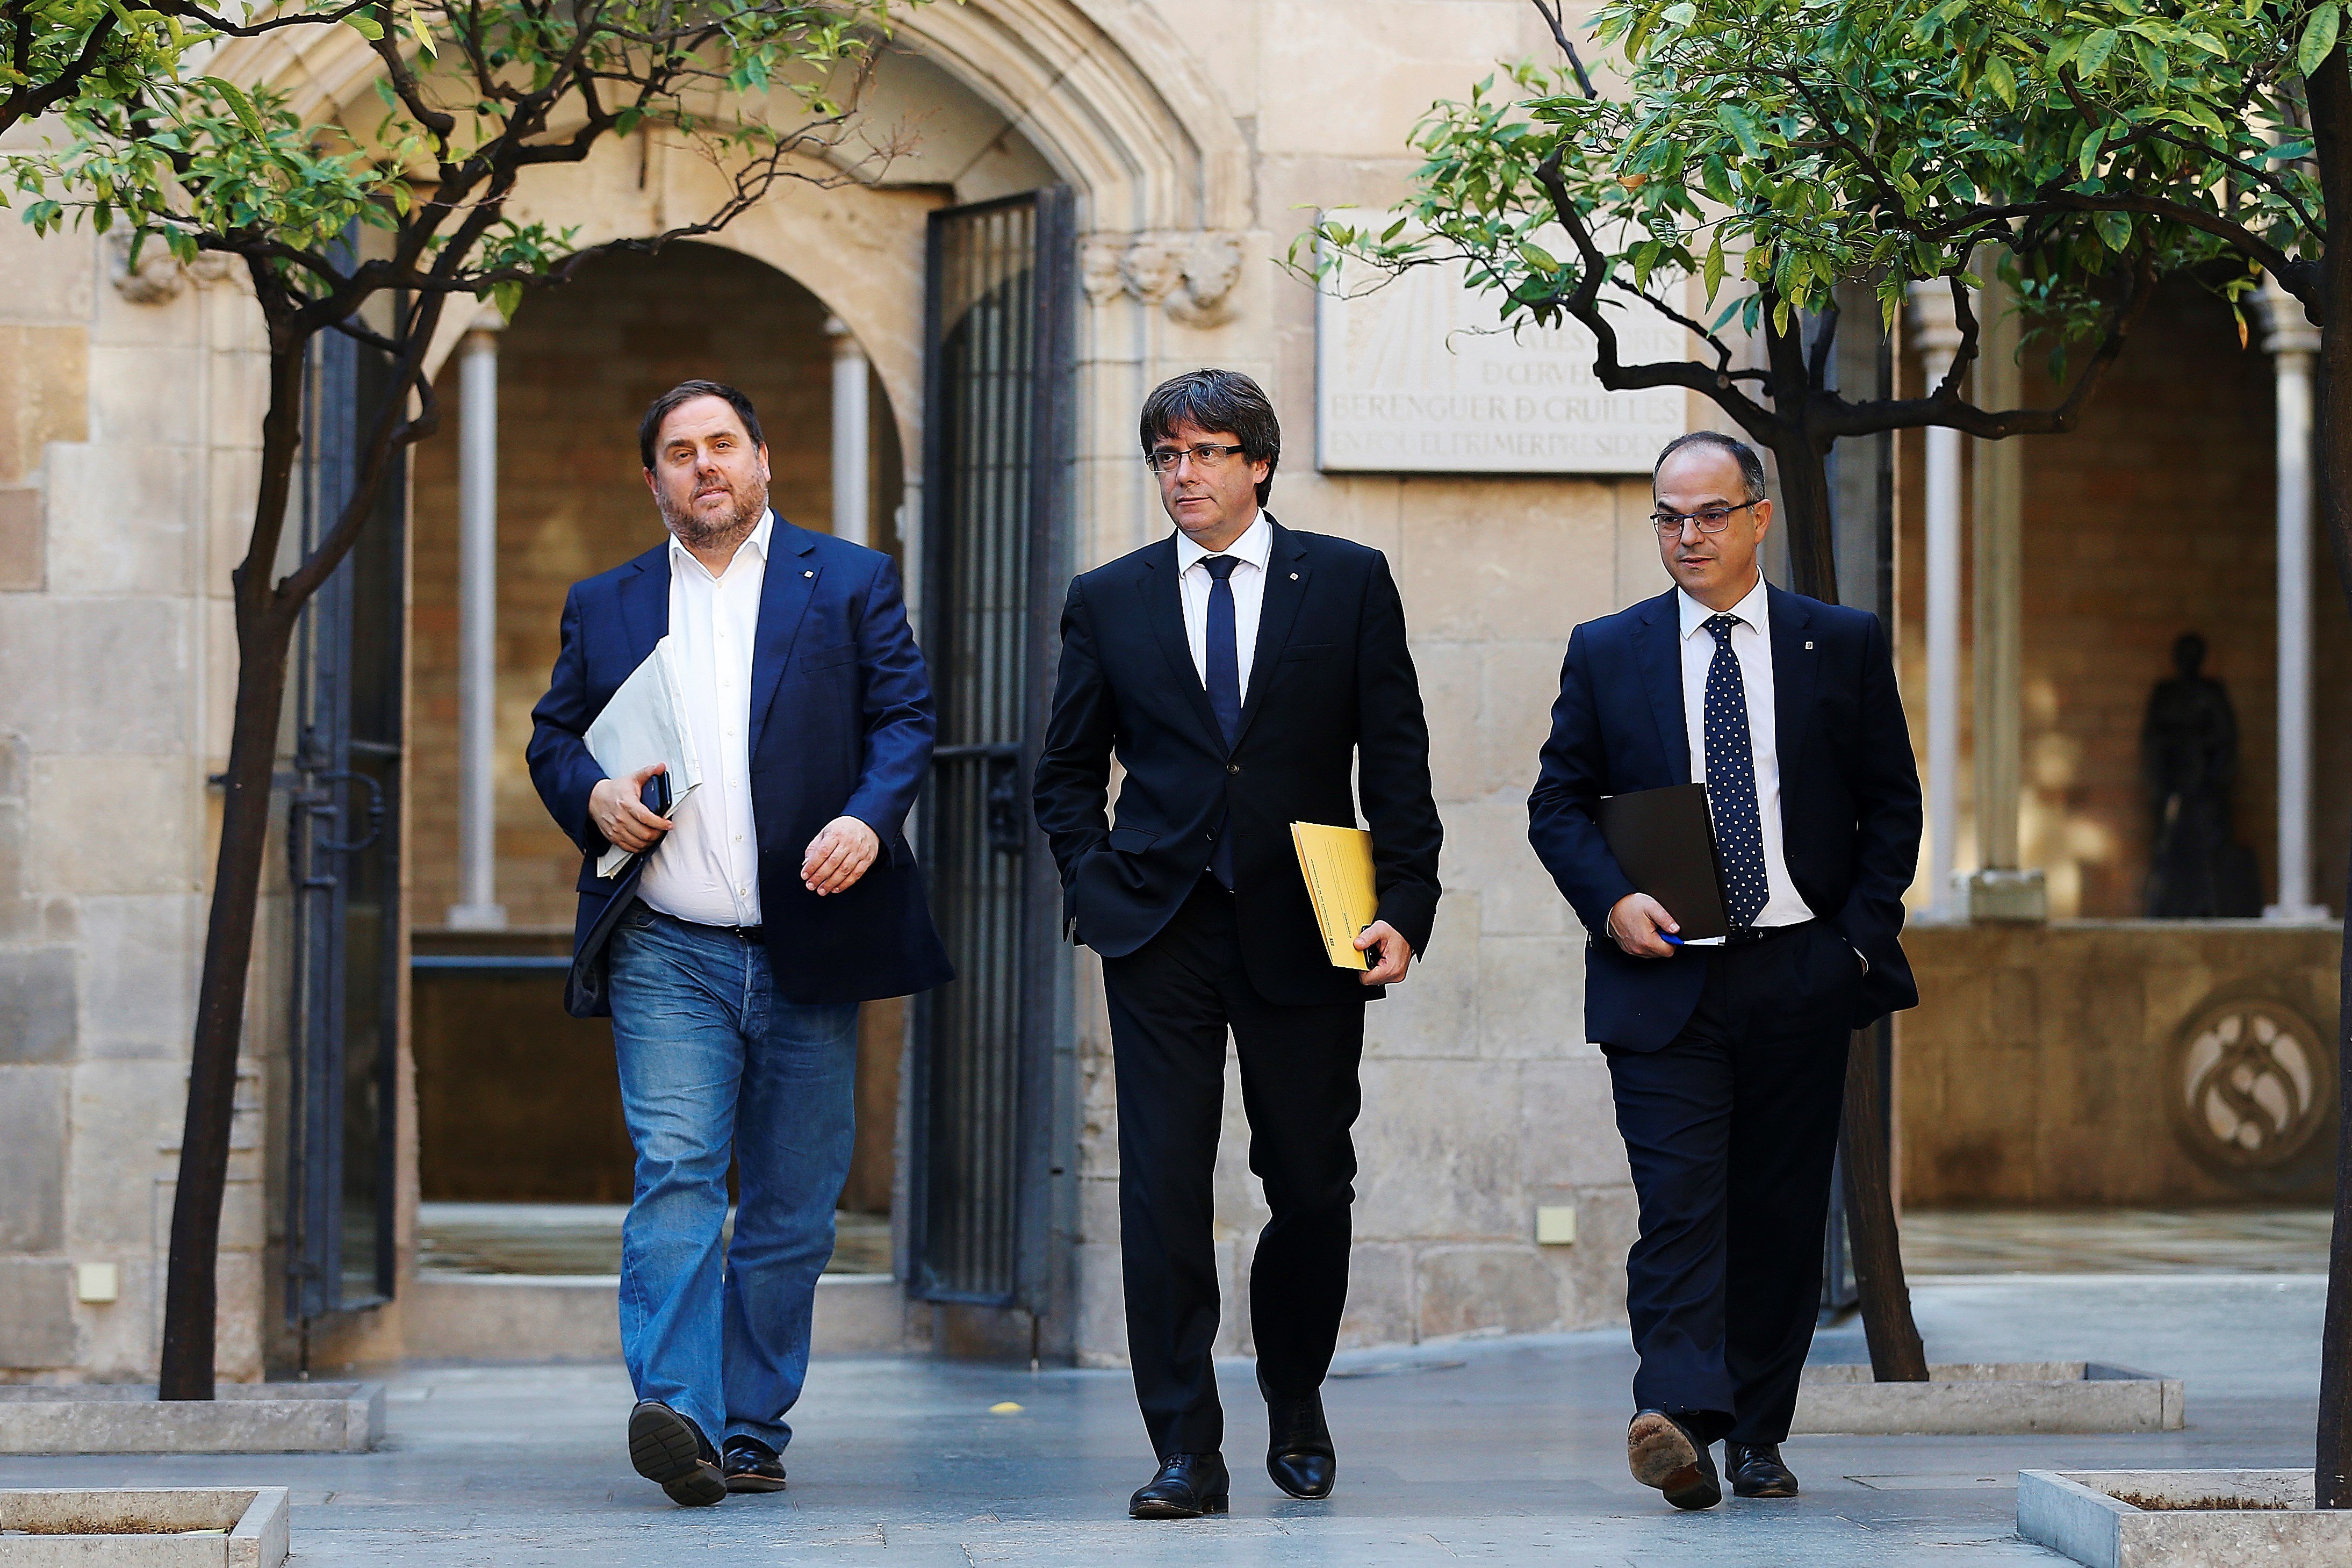 Puigdemont responderá a Rajoy sin recular e insistiendo en el diálogo